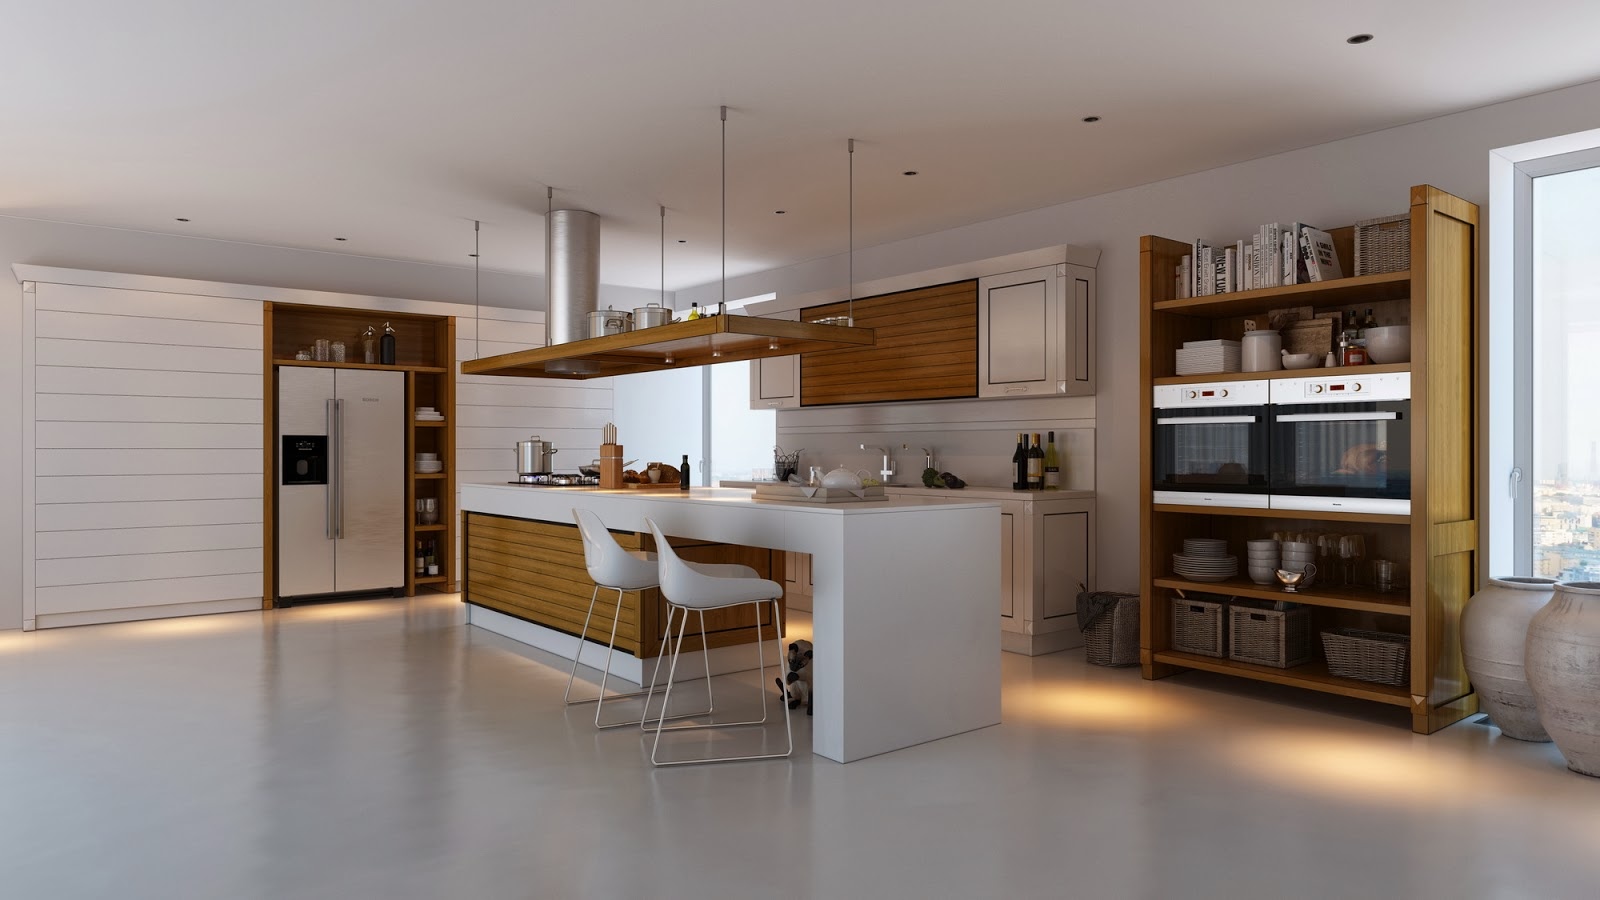 Дизайн кухонного гарнитура с деревянными вставками медового оттенка в интерьере